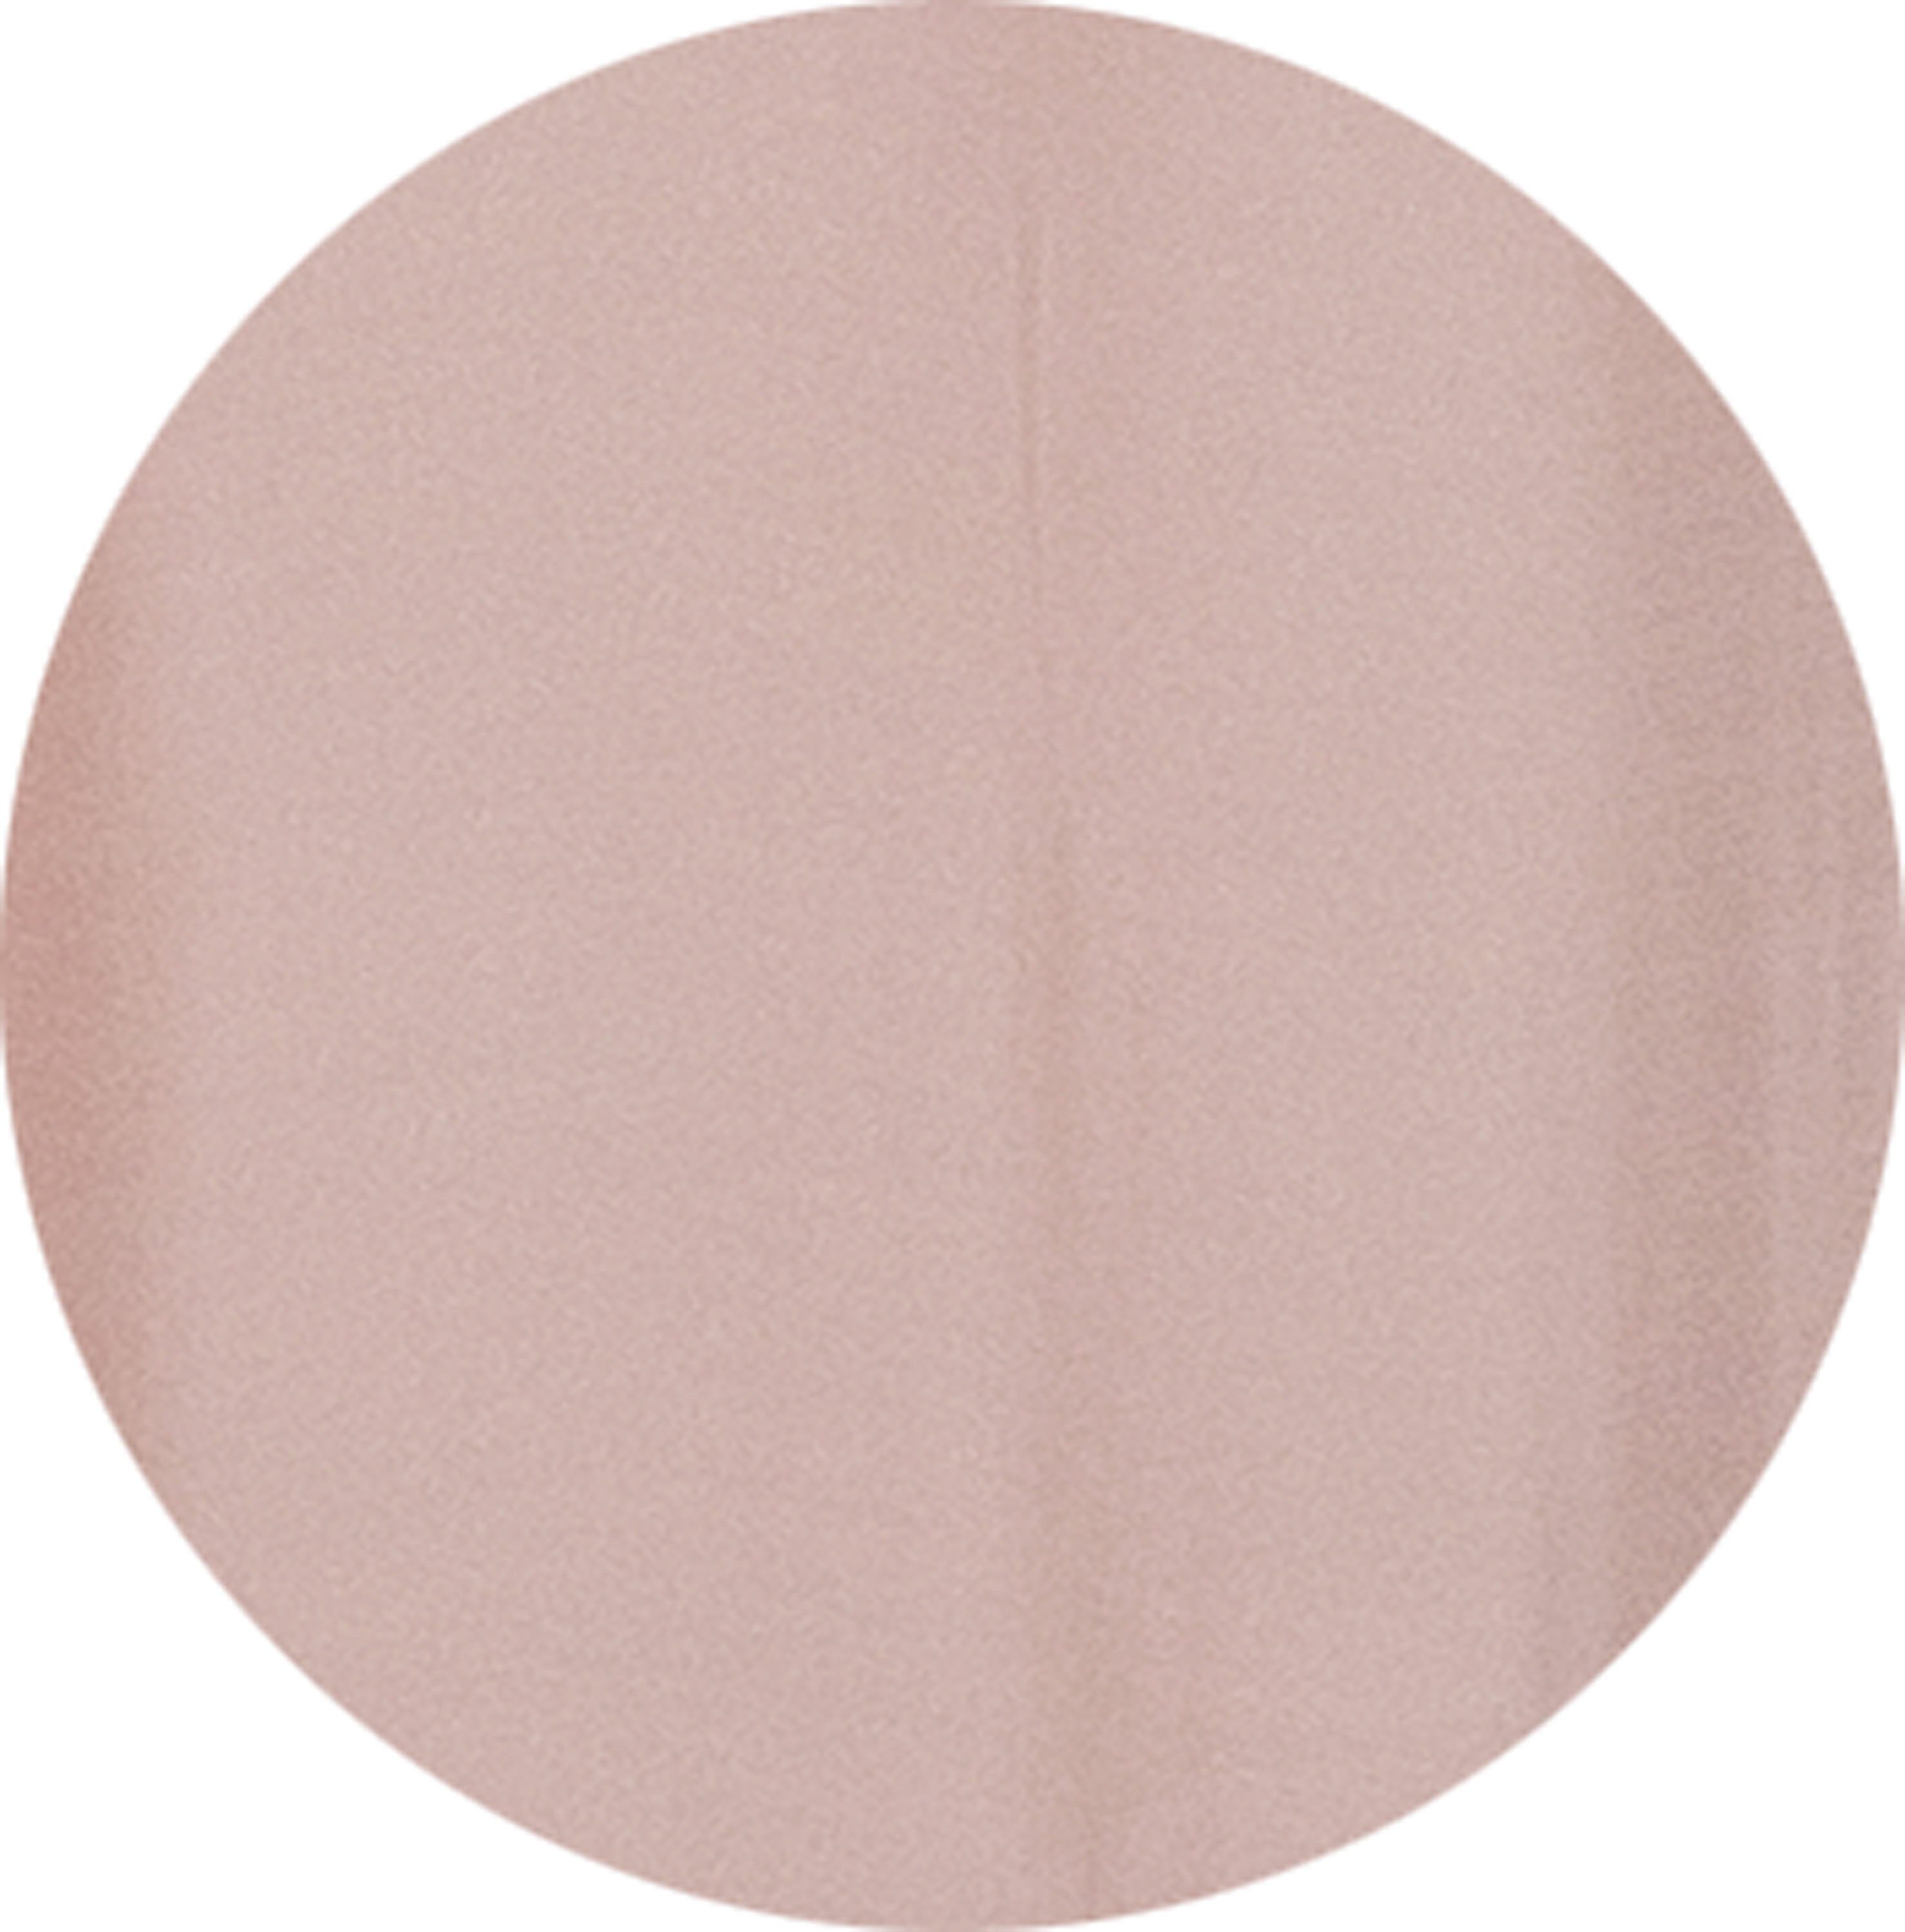 Vorhang Solid, (1 unifarbenen zeilosen, Jacquard, St), Multifunktionsband rosa/rosé WOHNEN-Kollektion, Look SCHÖNER halbtransparent, im